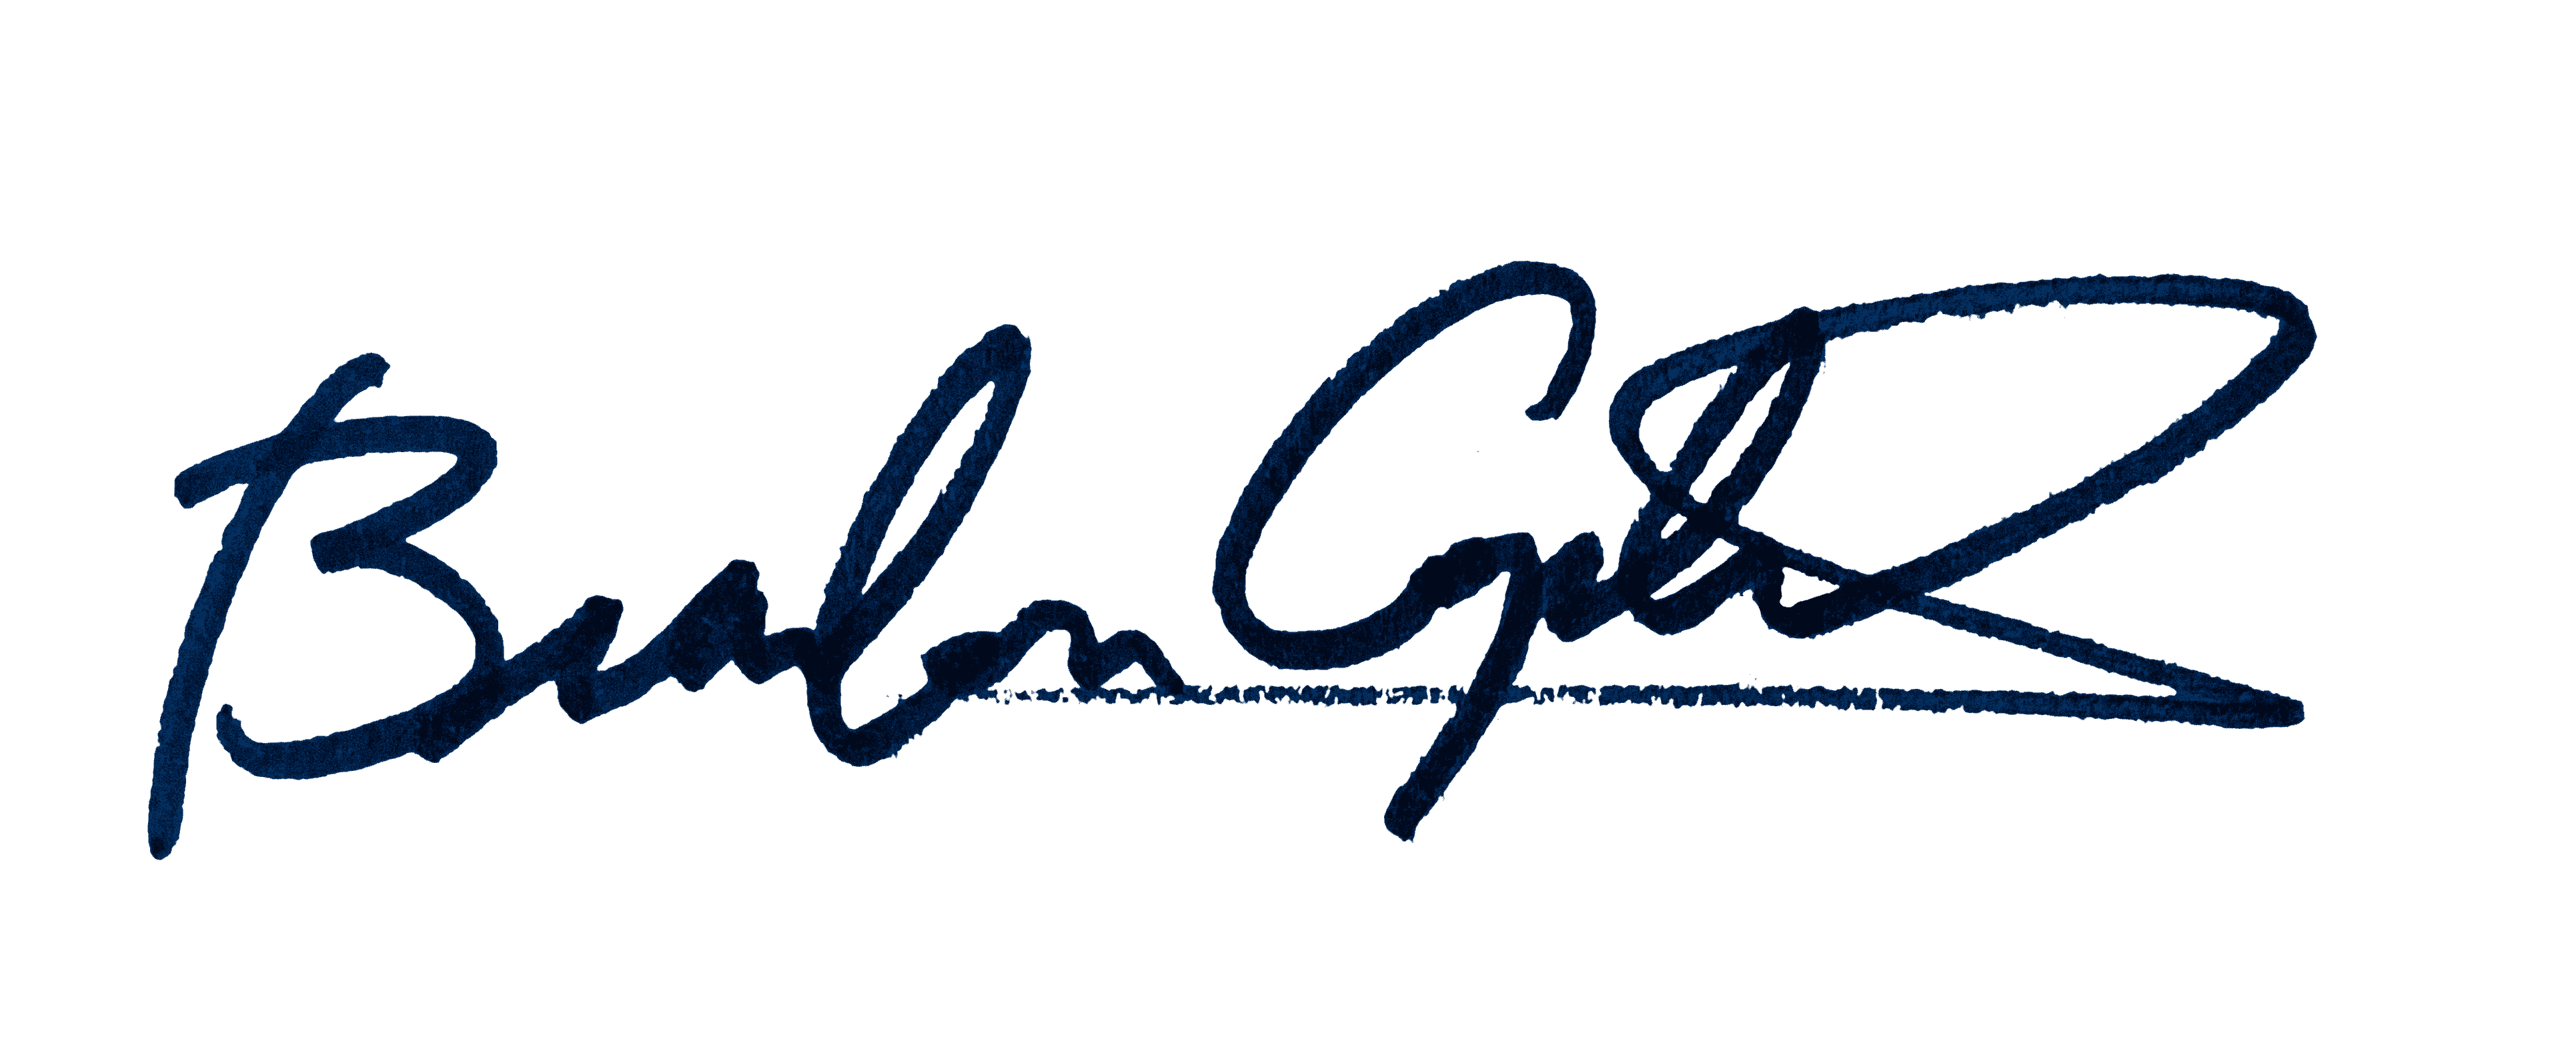 brandon copeland signature